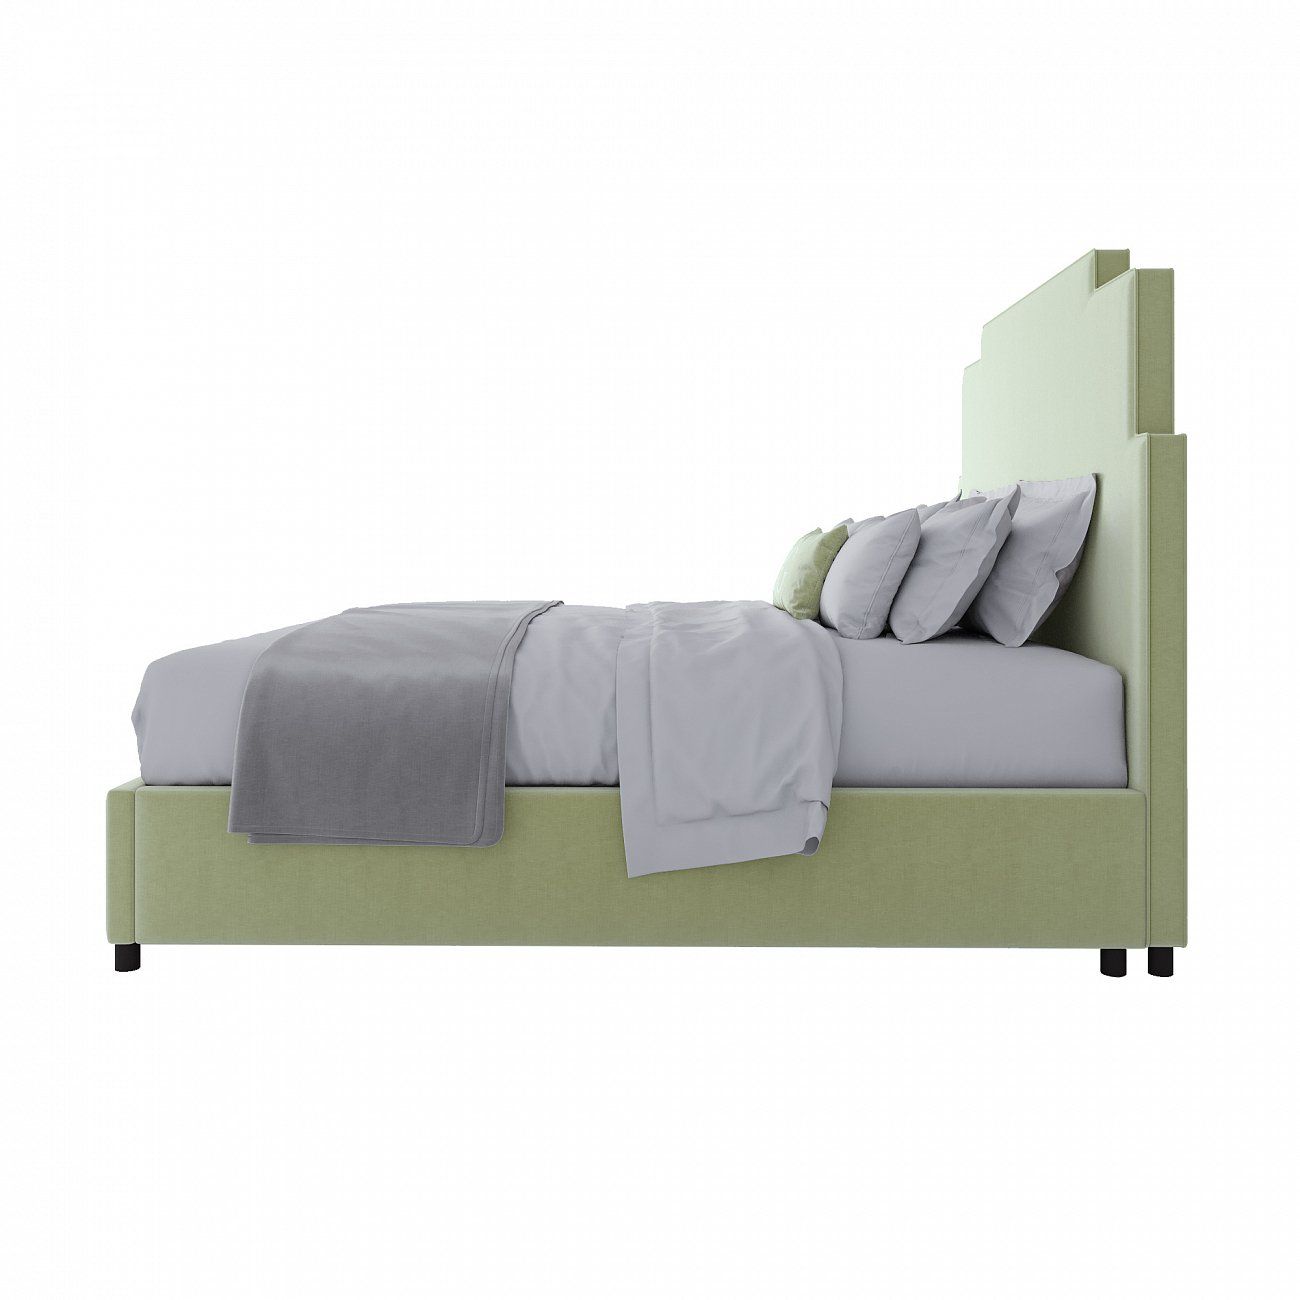 Кровать двуспальная 180x200 см зеленая Paxton Bed Mint